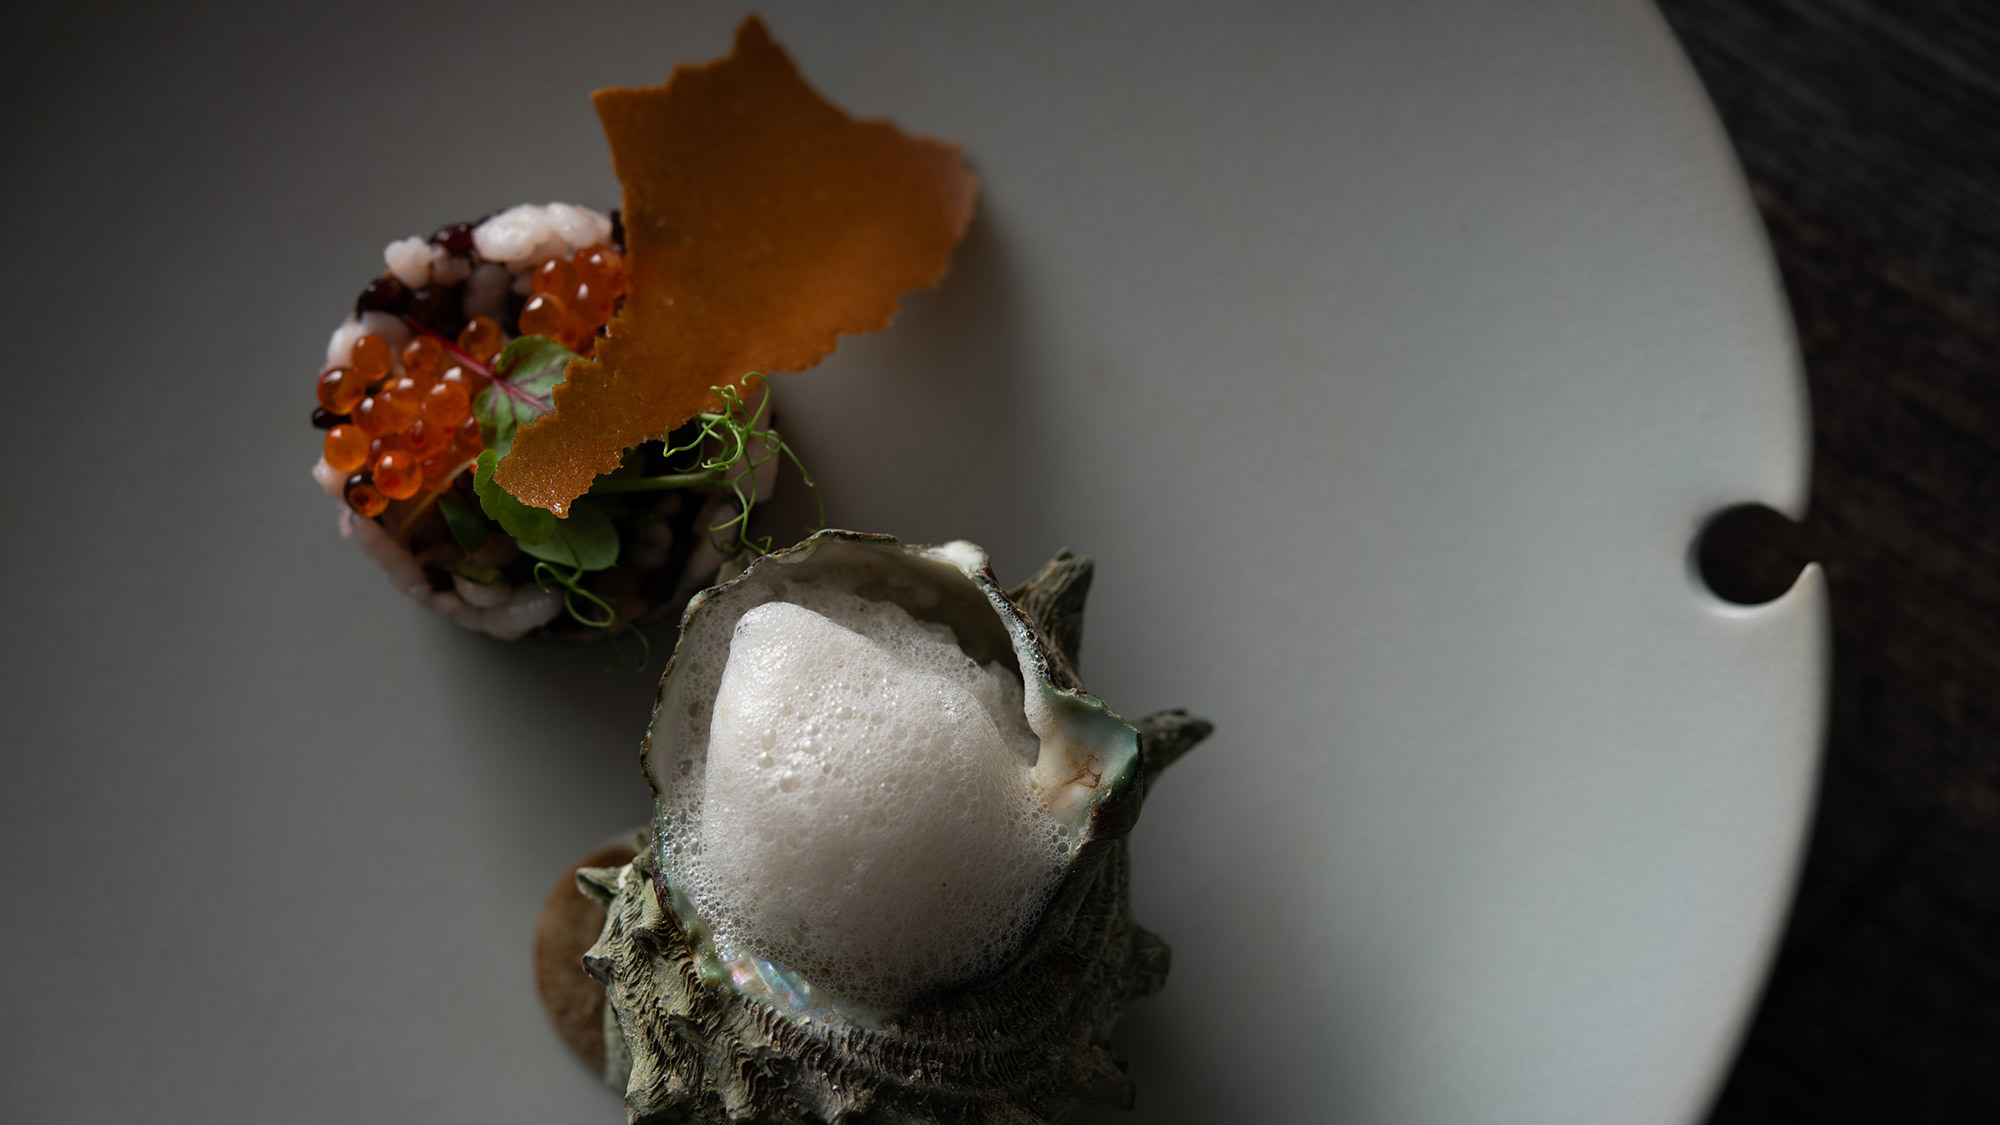 【HANARÉ;】石垣島の自然の恵みと歴史の積み重なりを表現※料理一例